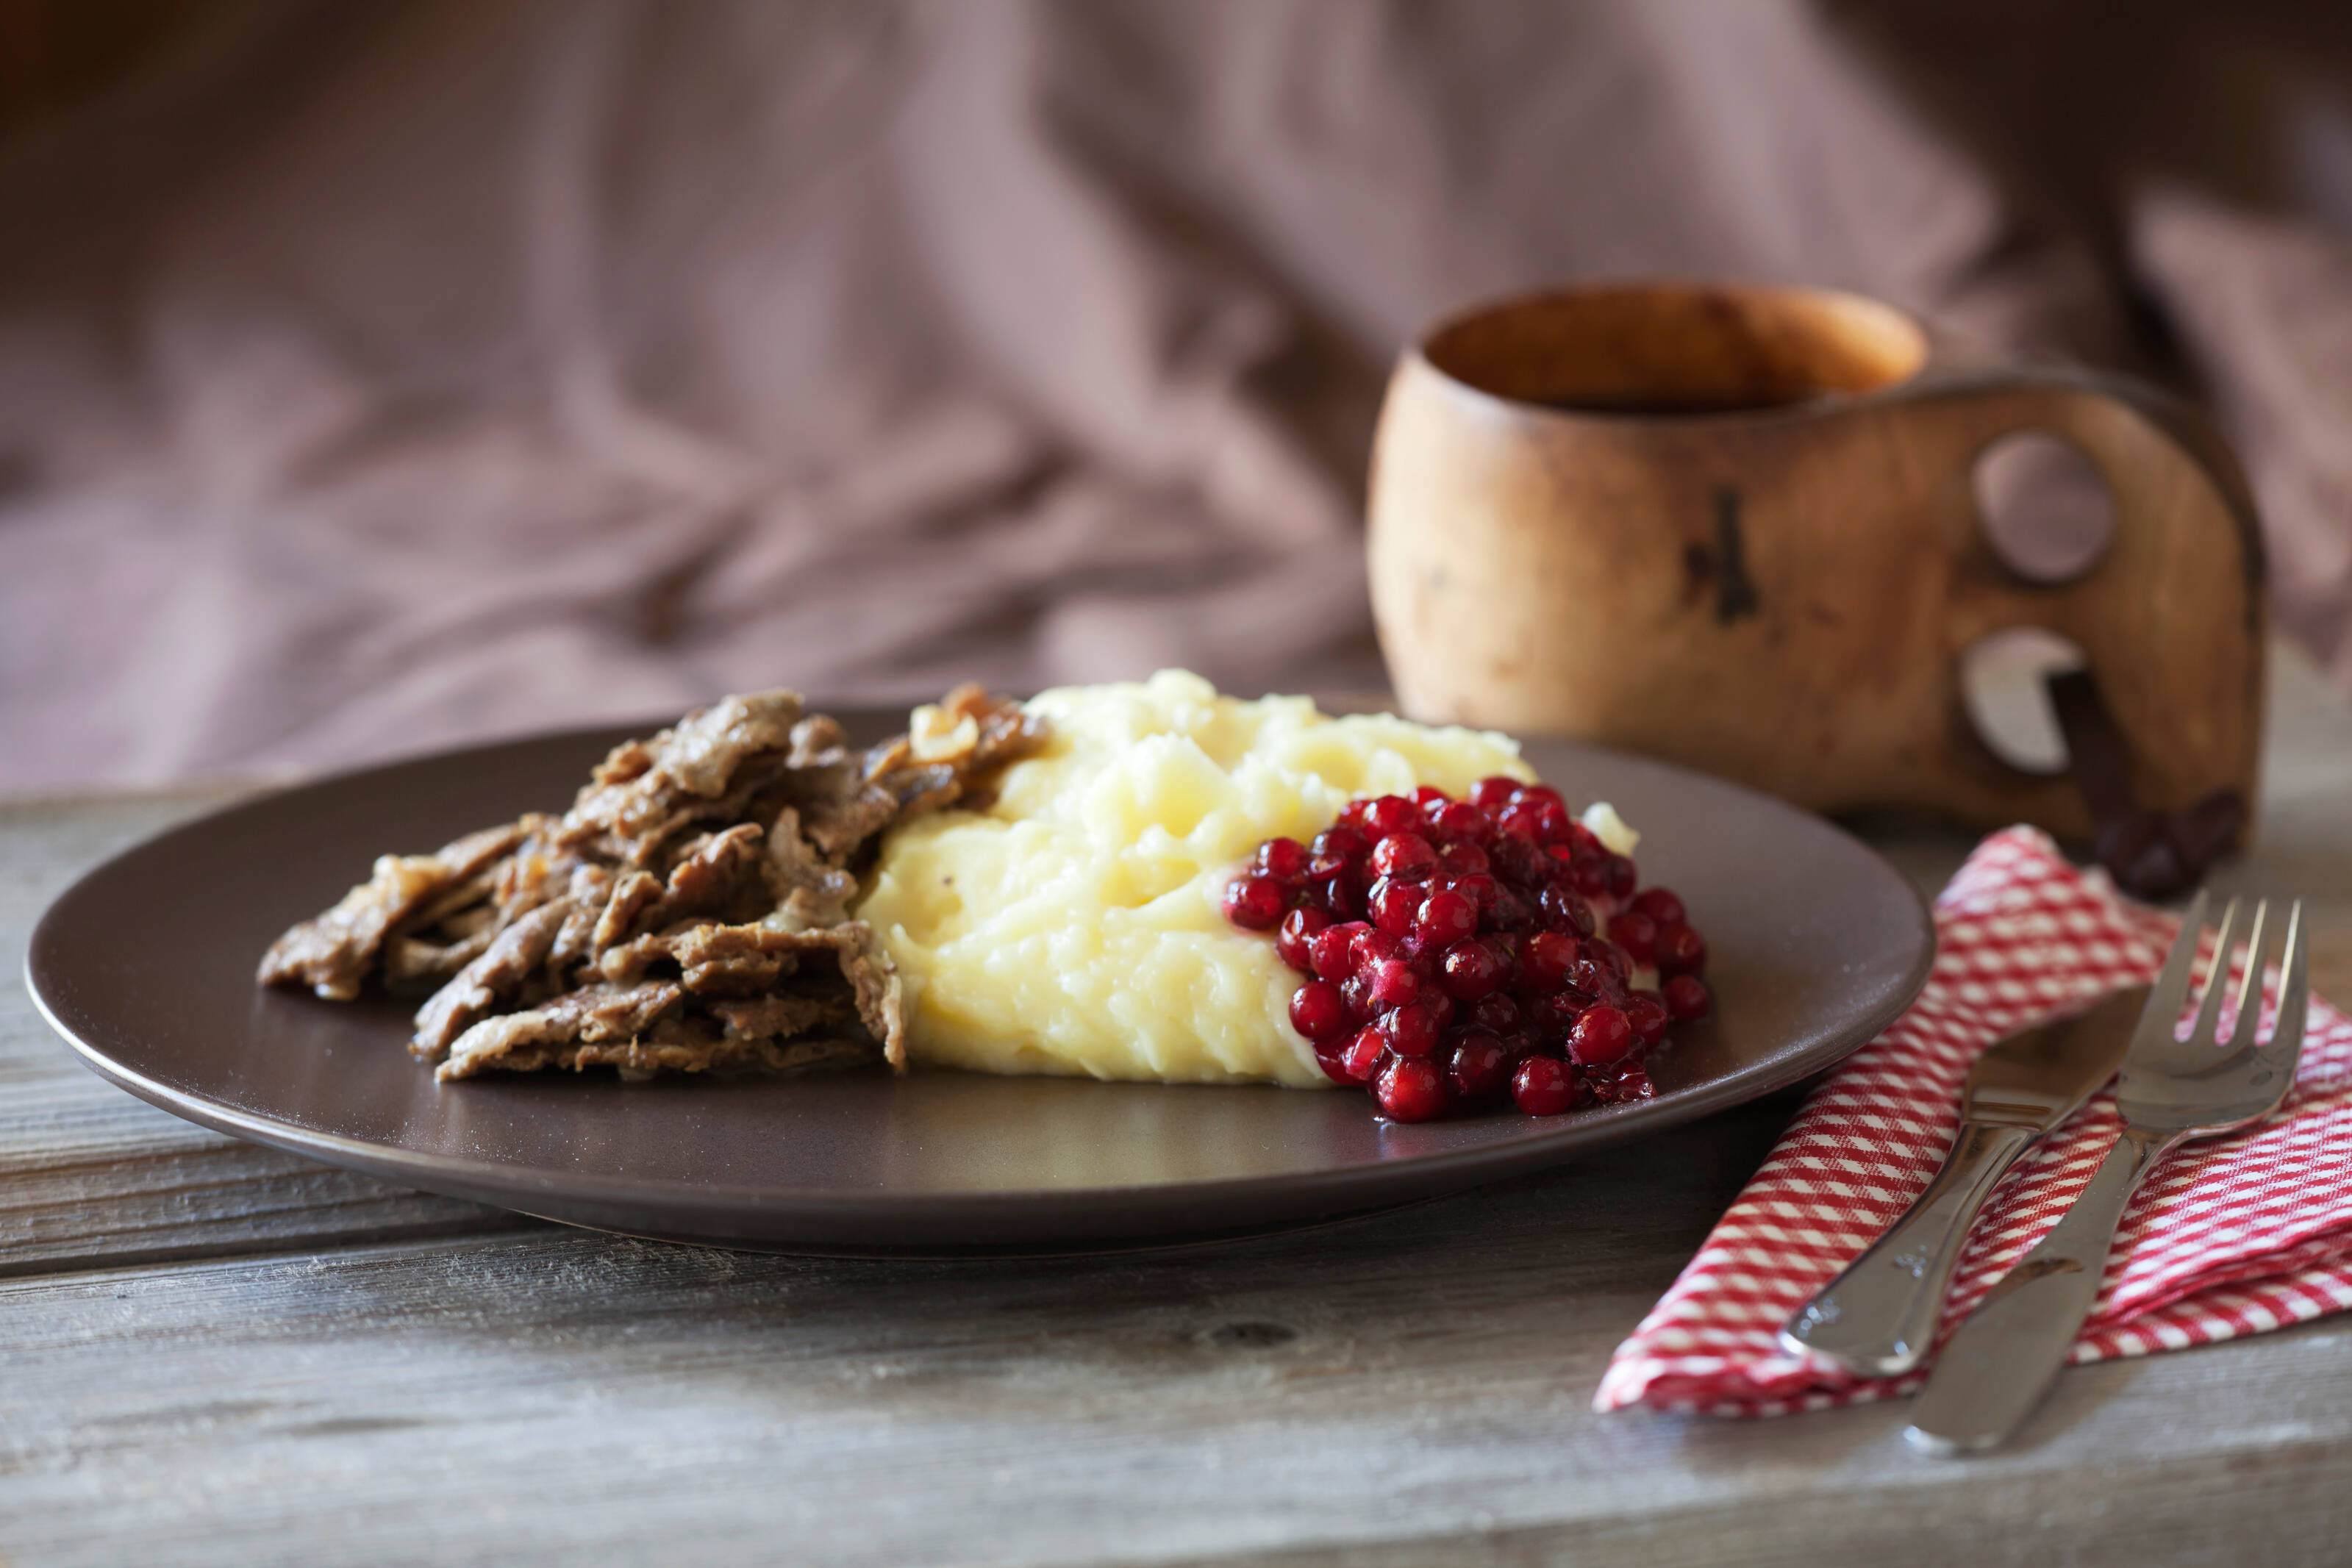 トナカイのソテー、マッシュポテト、リンゴンベリーが入ったフィンランドの伝統的な料理。